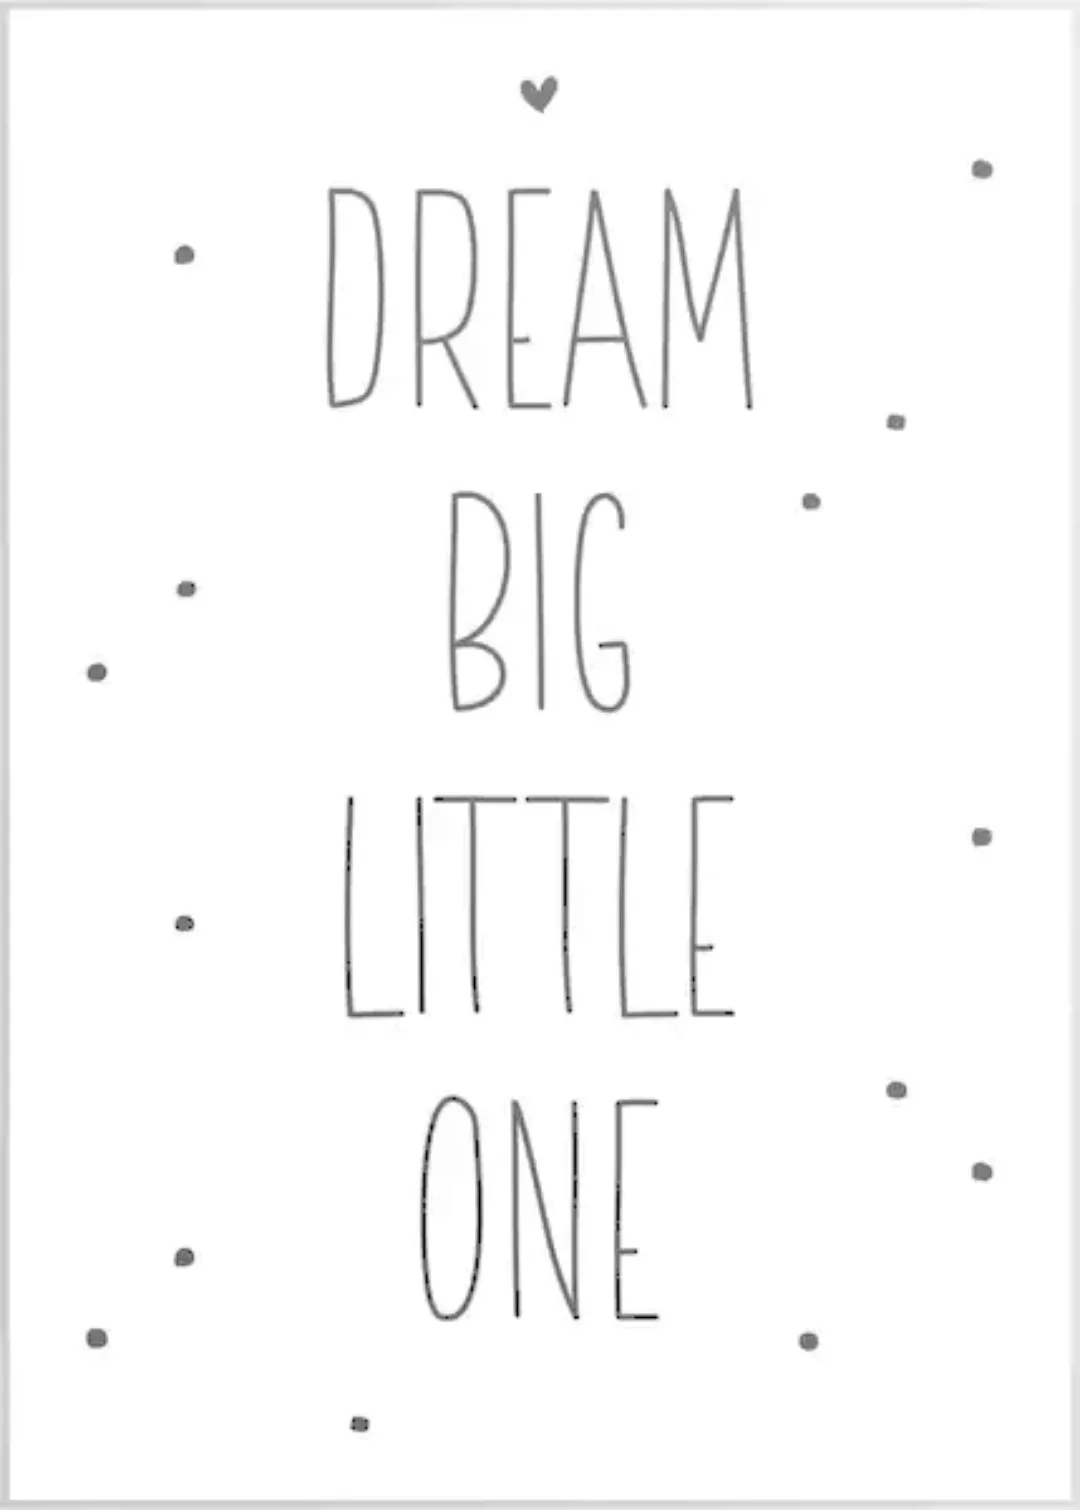 Reinders Wandbild "Slim Frame White 50x70 Dream Big Little One" günstig online kaufen